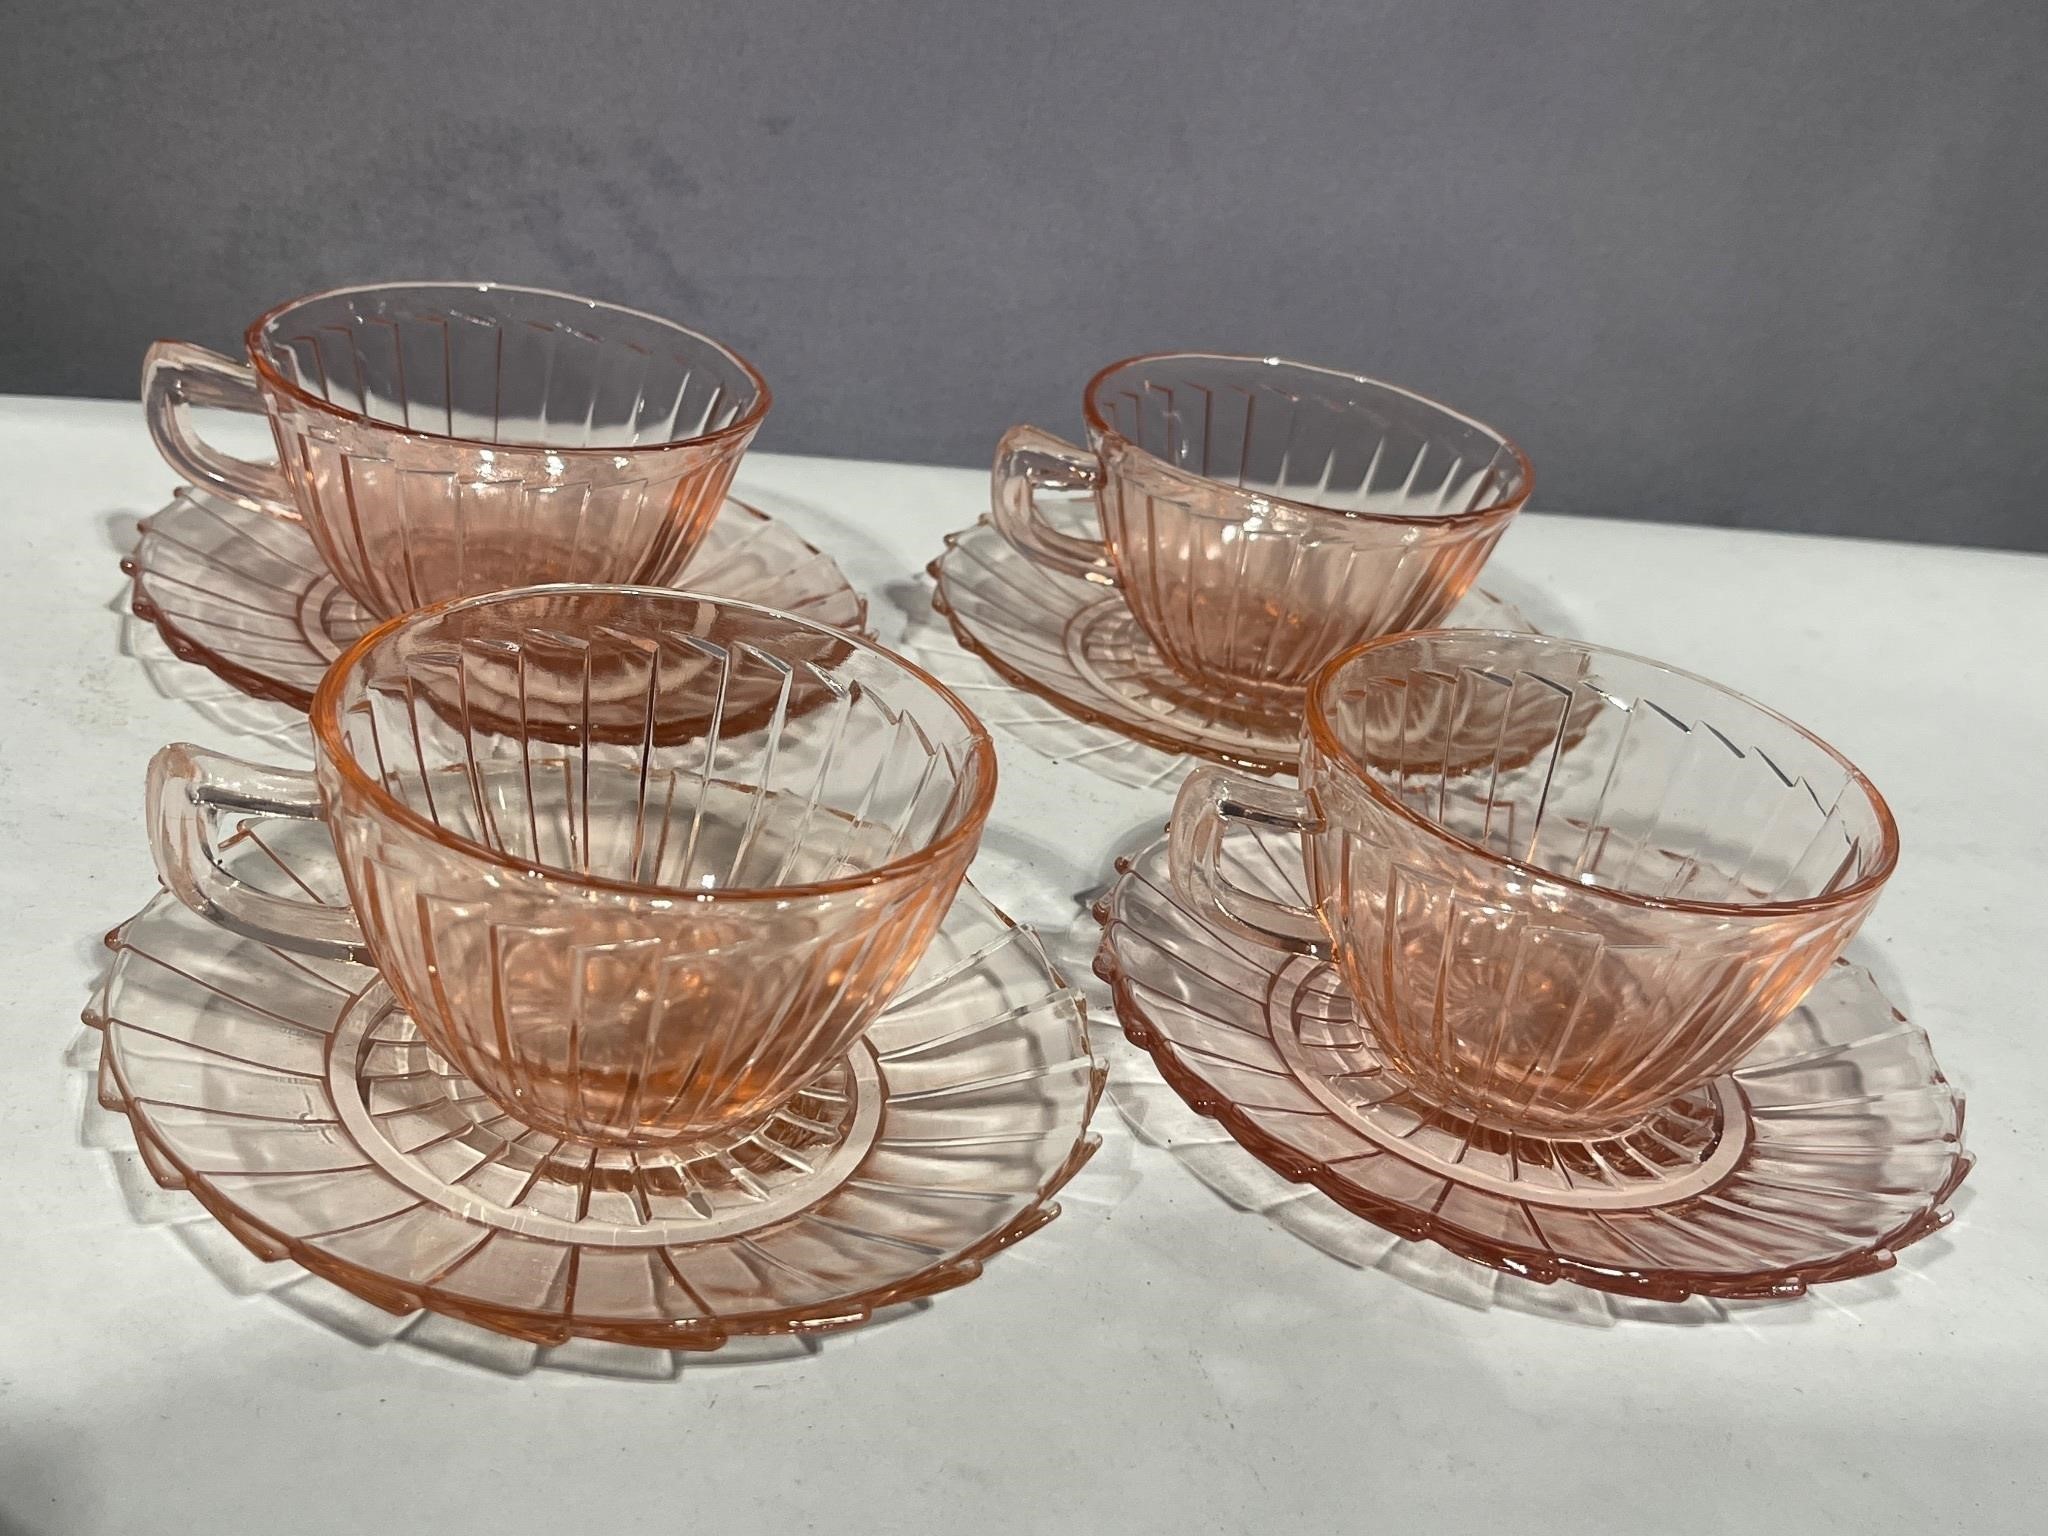 4 pinwheel cups/saucers